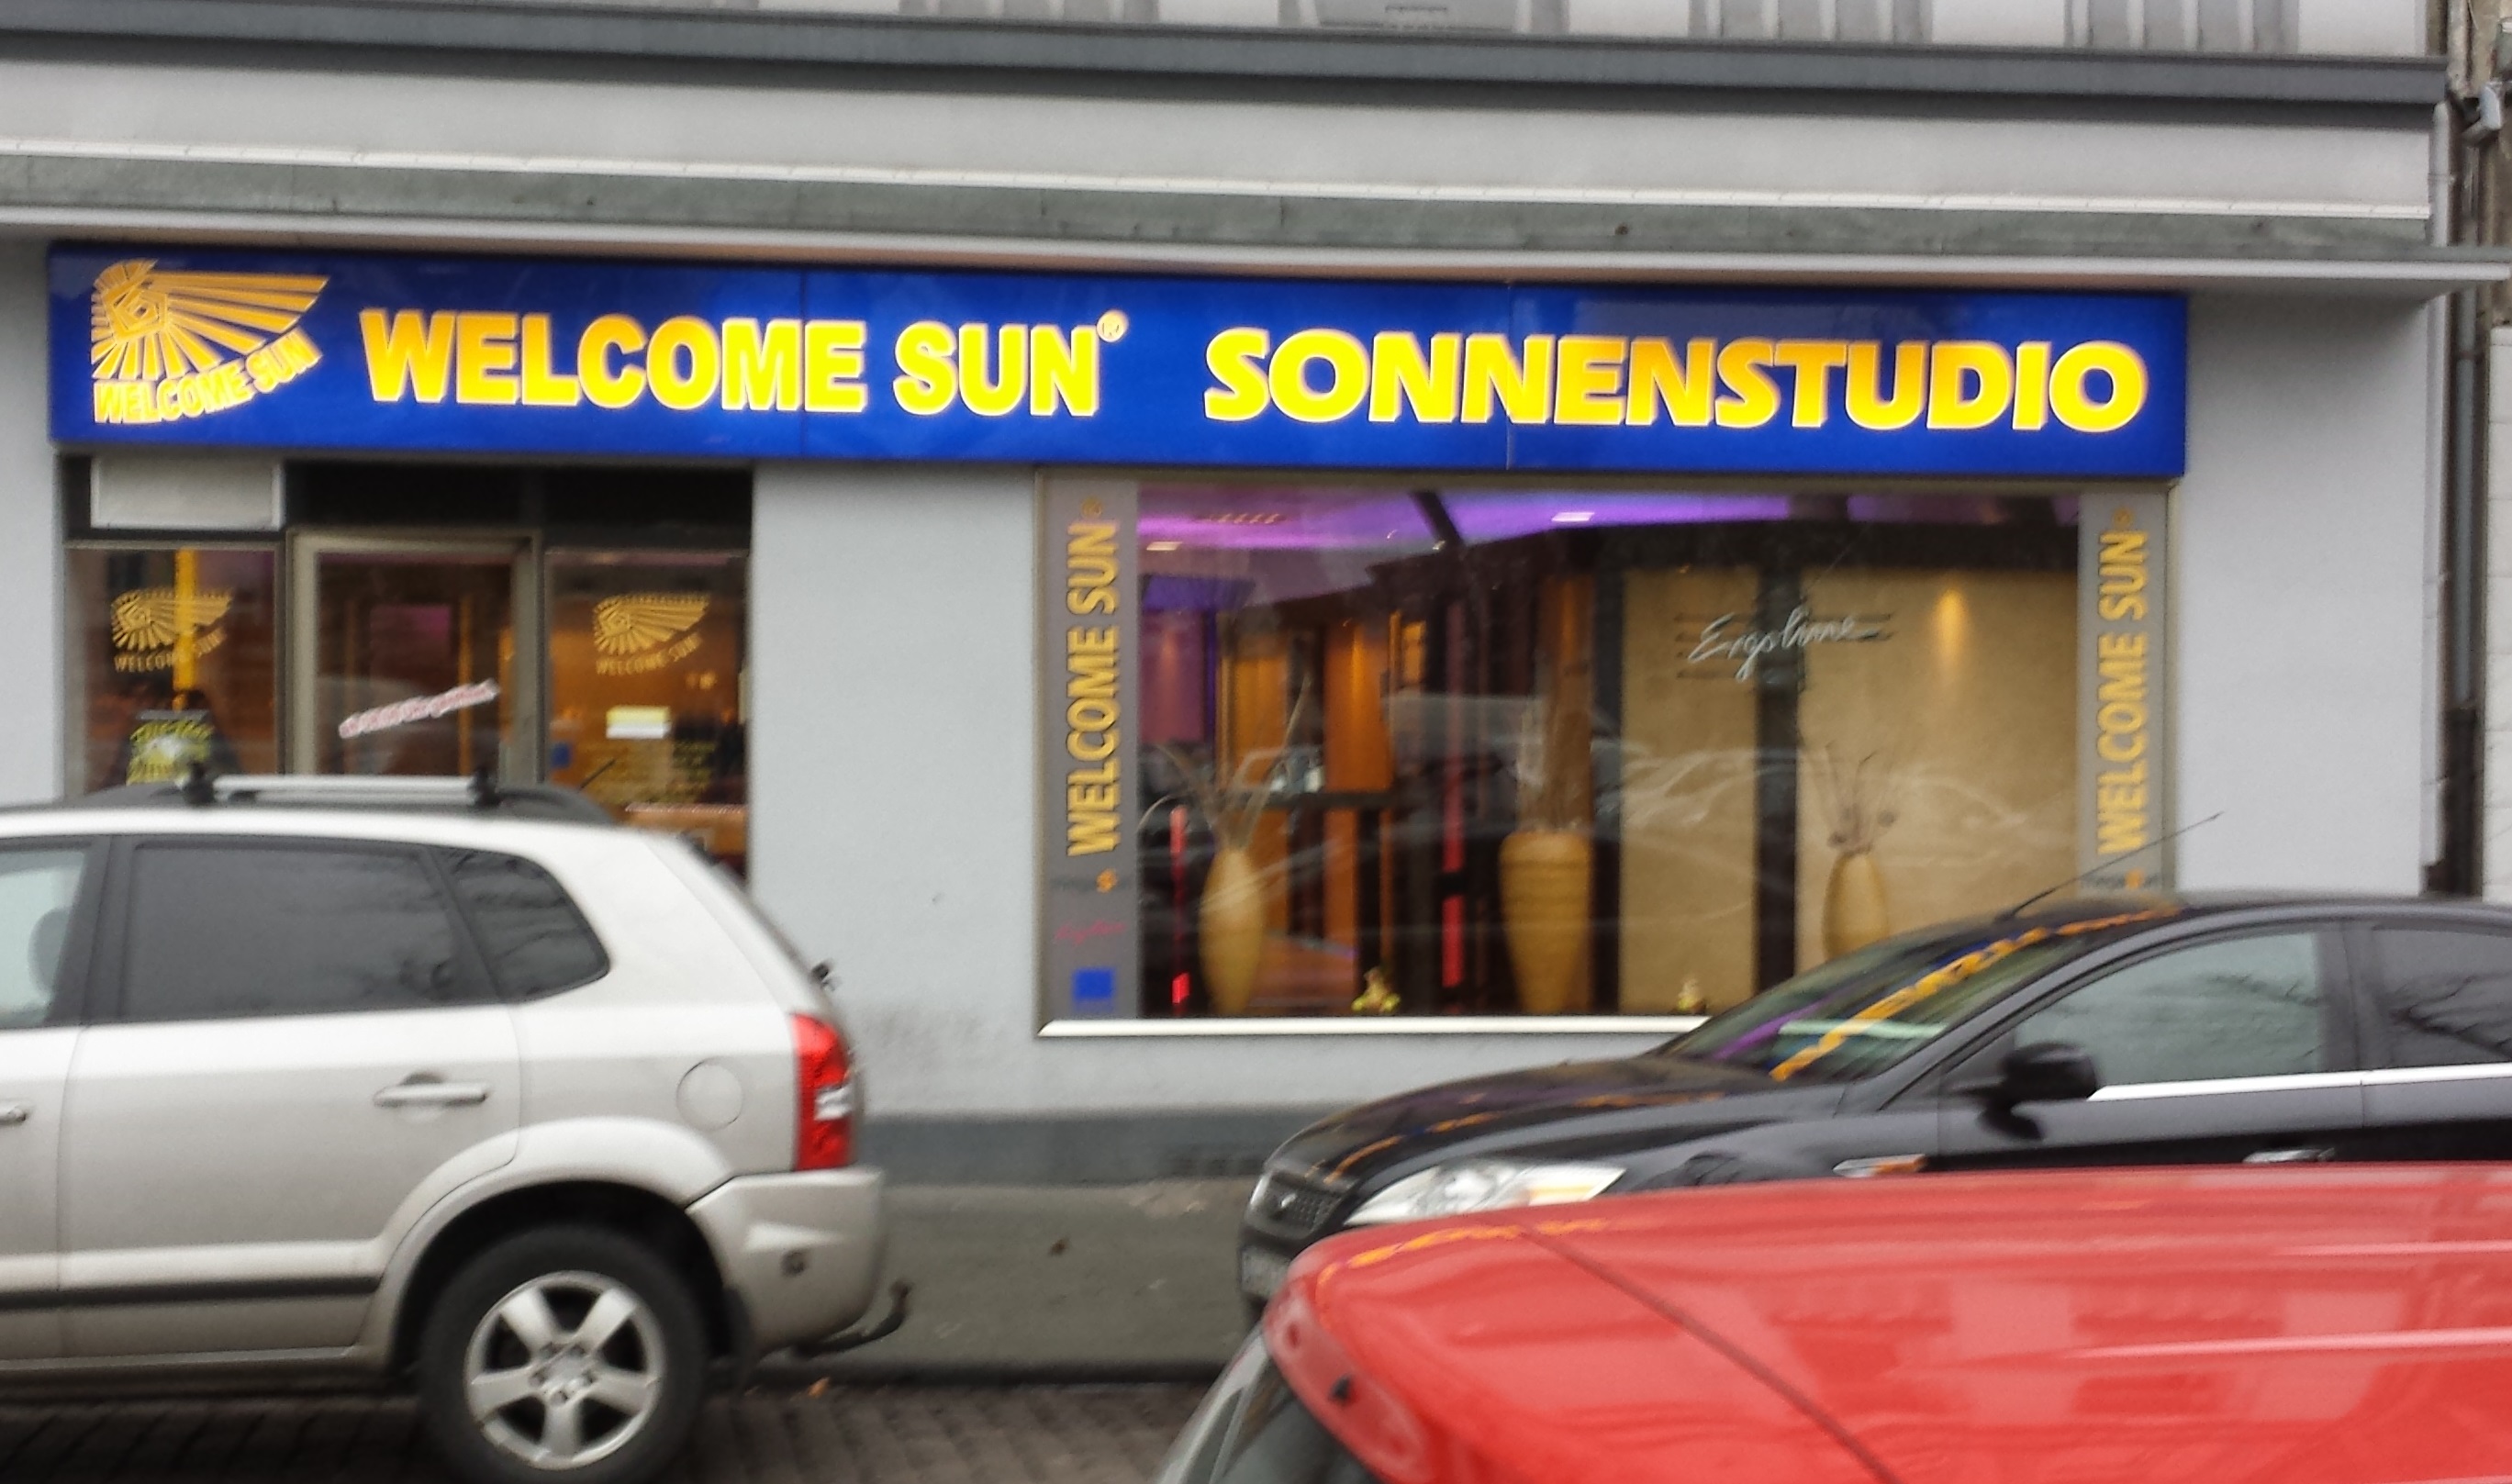 Bild 1 Welcome Sun Sonnenstudio in Duisburg